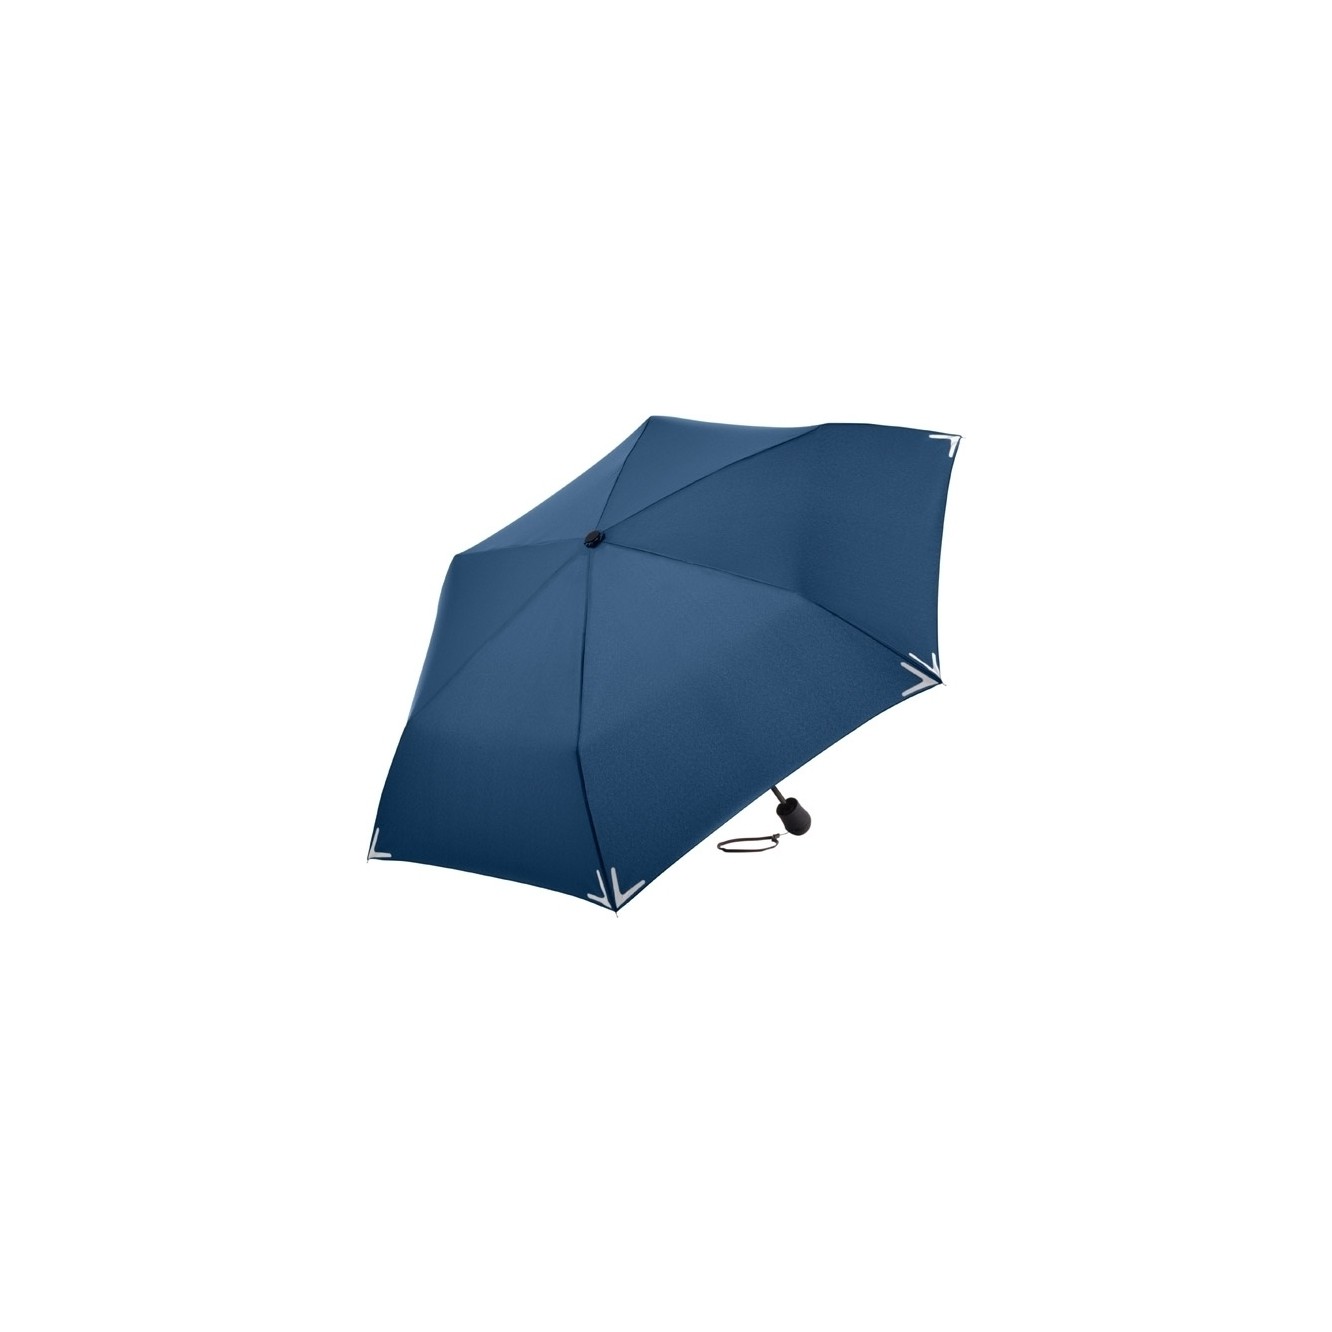 Fare Safebrella LED mini paraplu